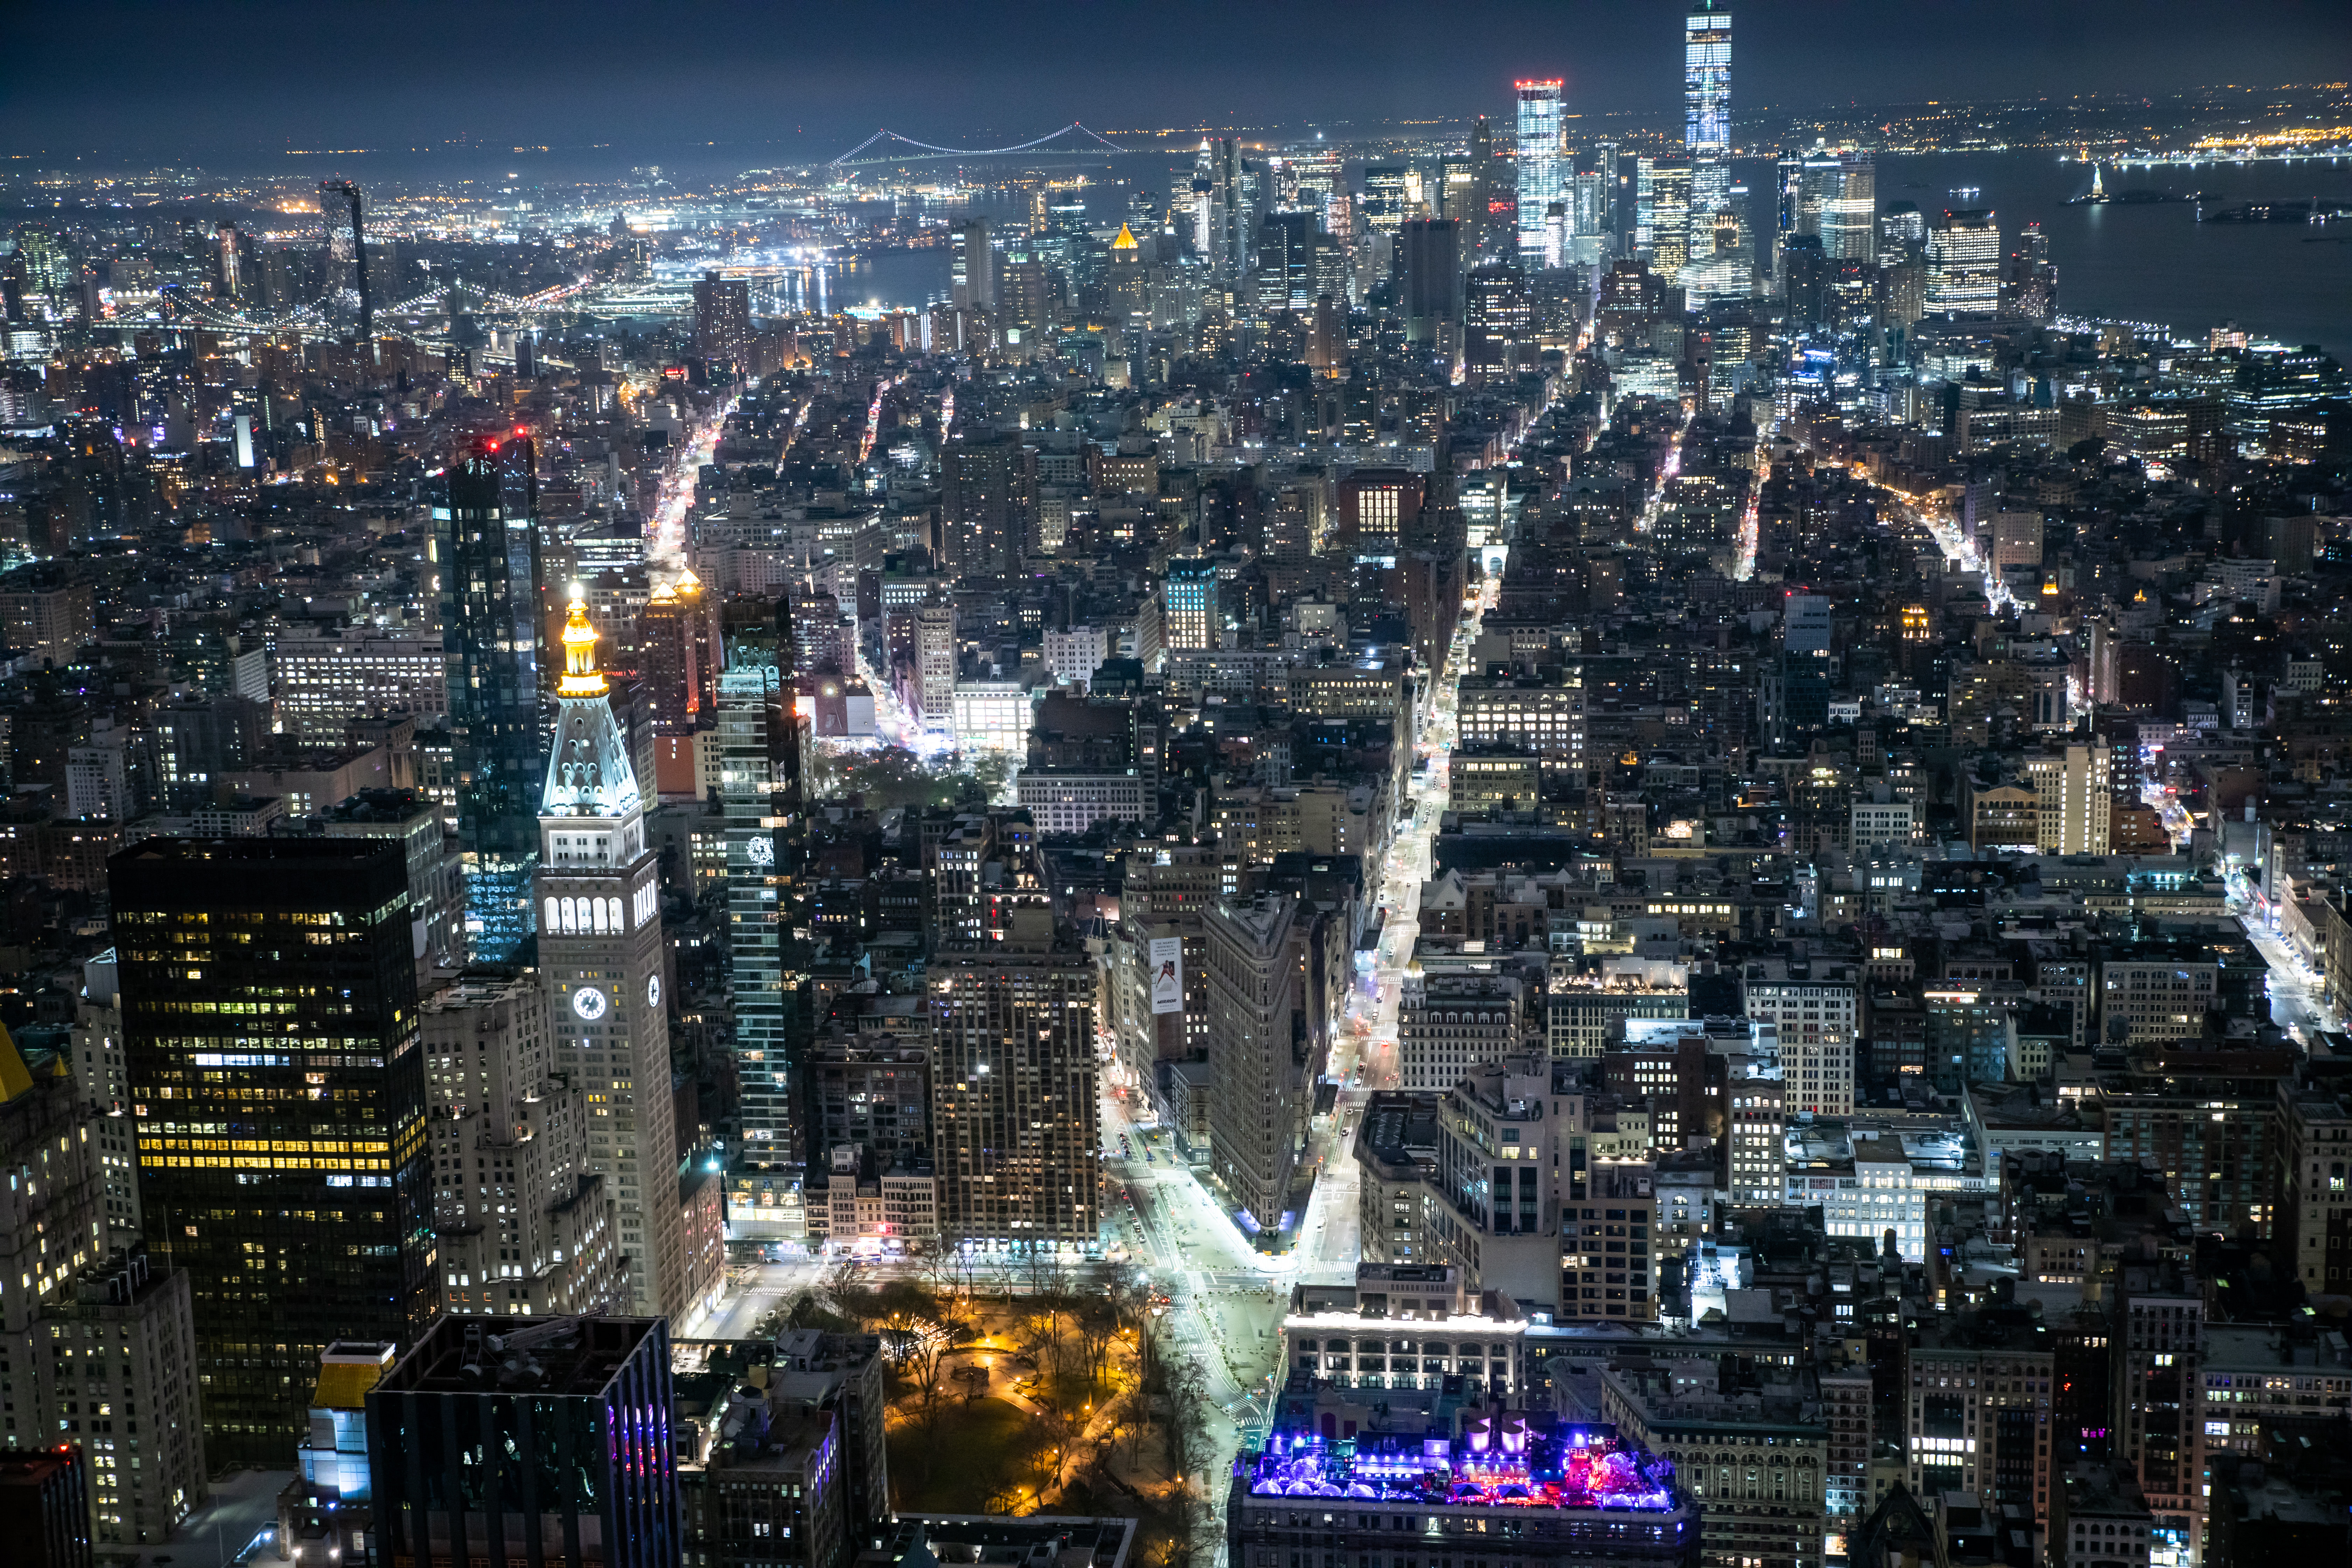 エンパイアステートビル展望台から見た夜景 ニューヨーク の写真を無料ダウンロード フリー素材 ぱくたそ